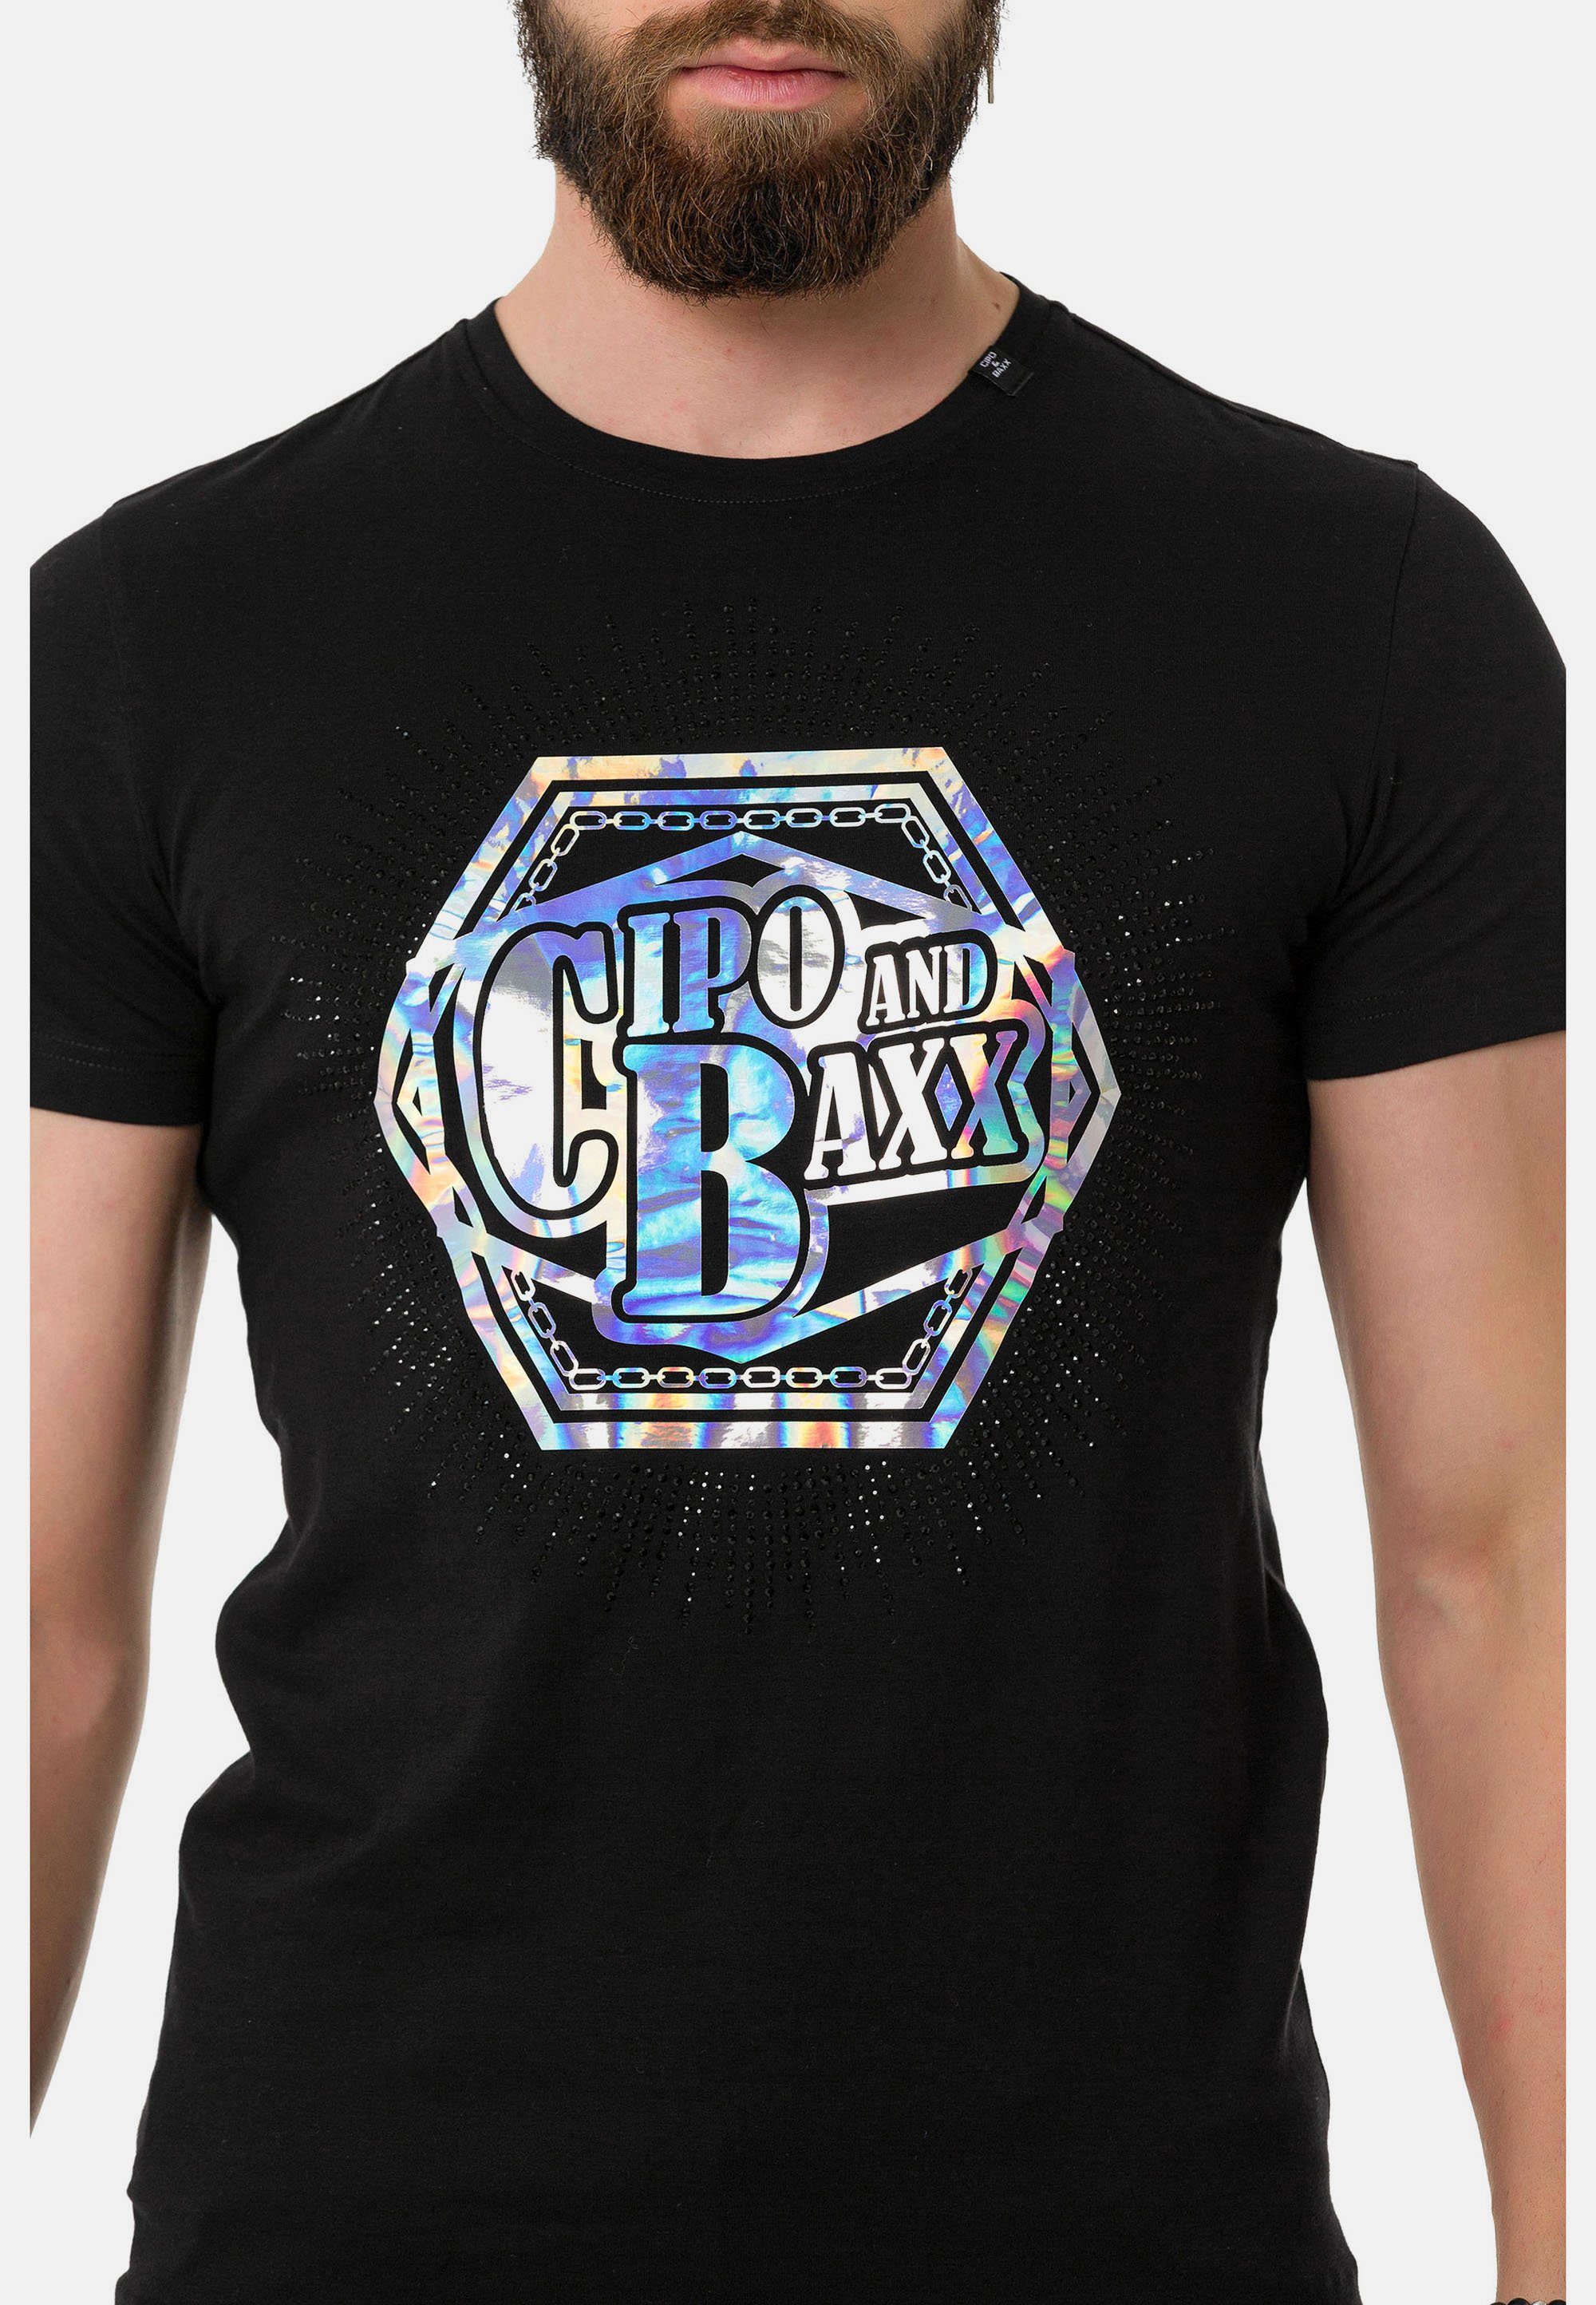 T-Shirt farbenfrohem Marken-Schriftzug schwarz & Cipo mit Baxx